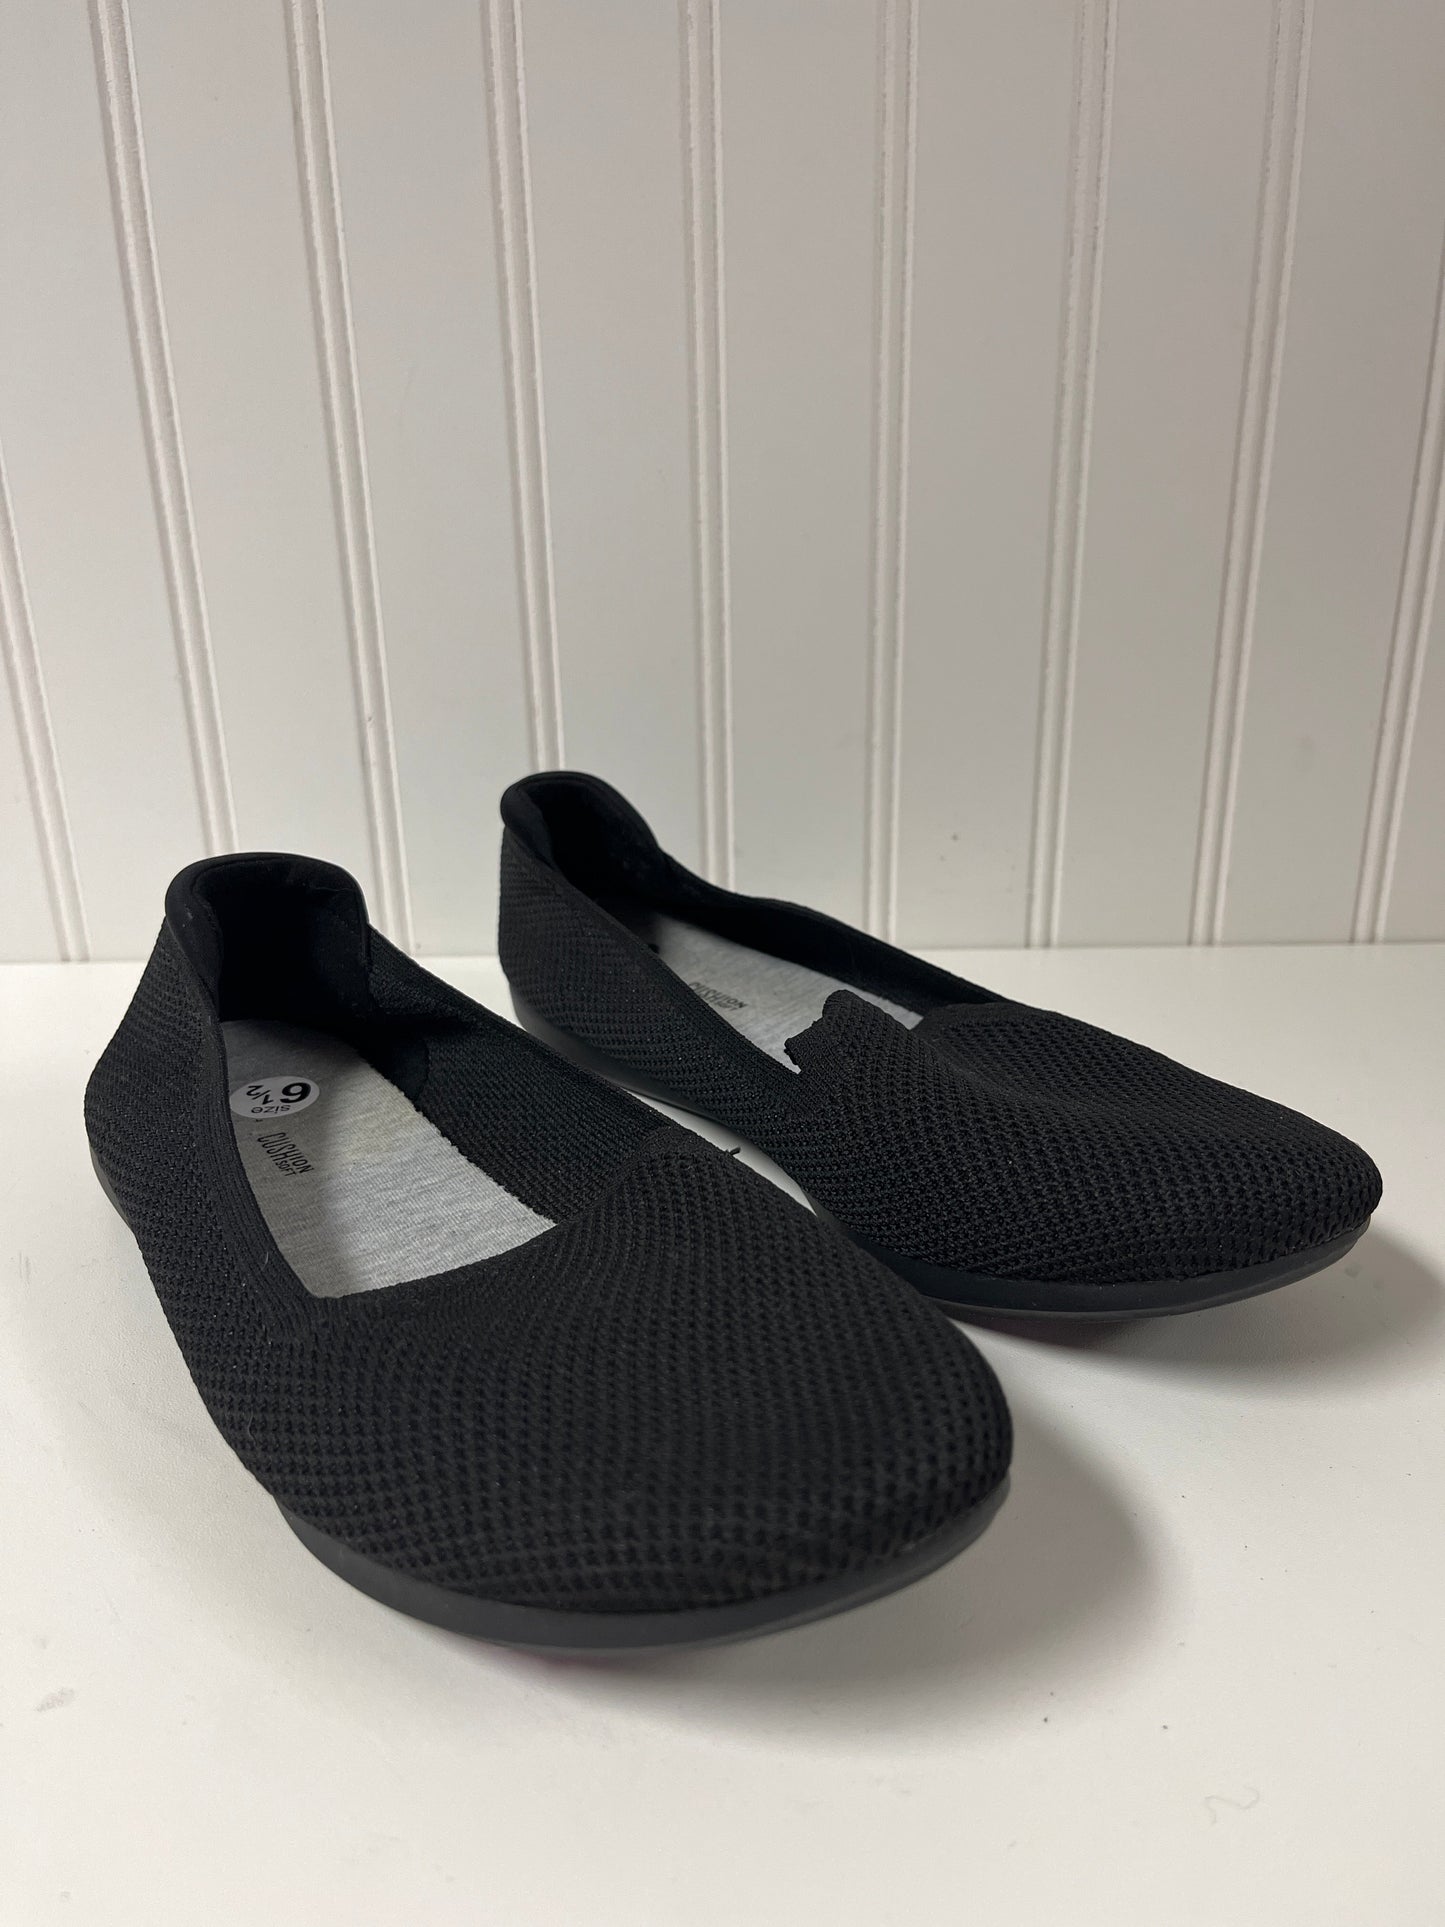 Black Shoes Flats Clarks, Size 6.5